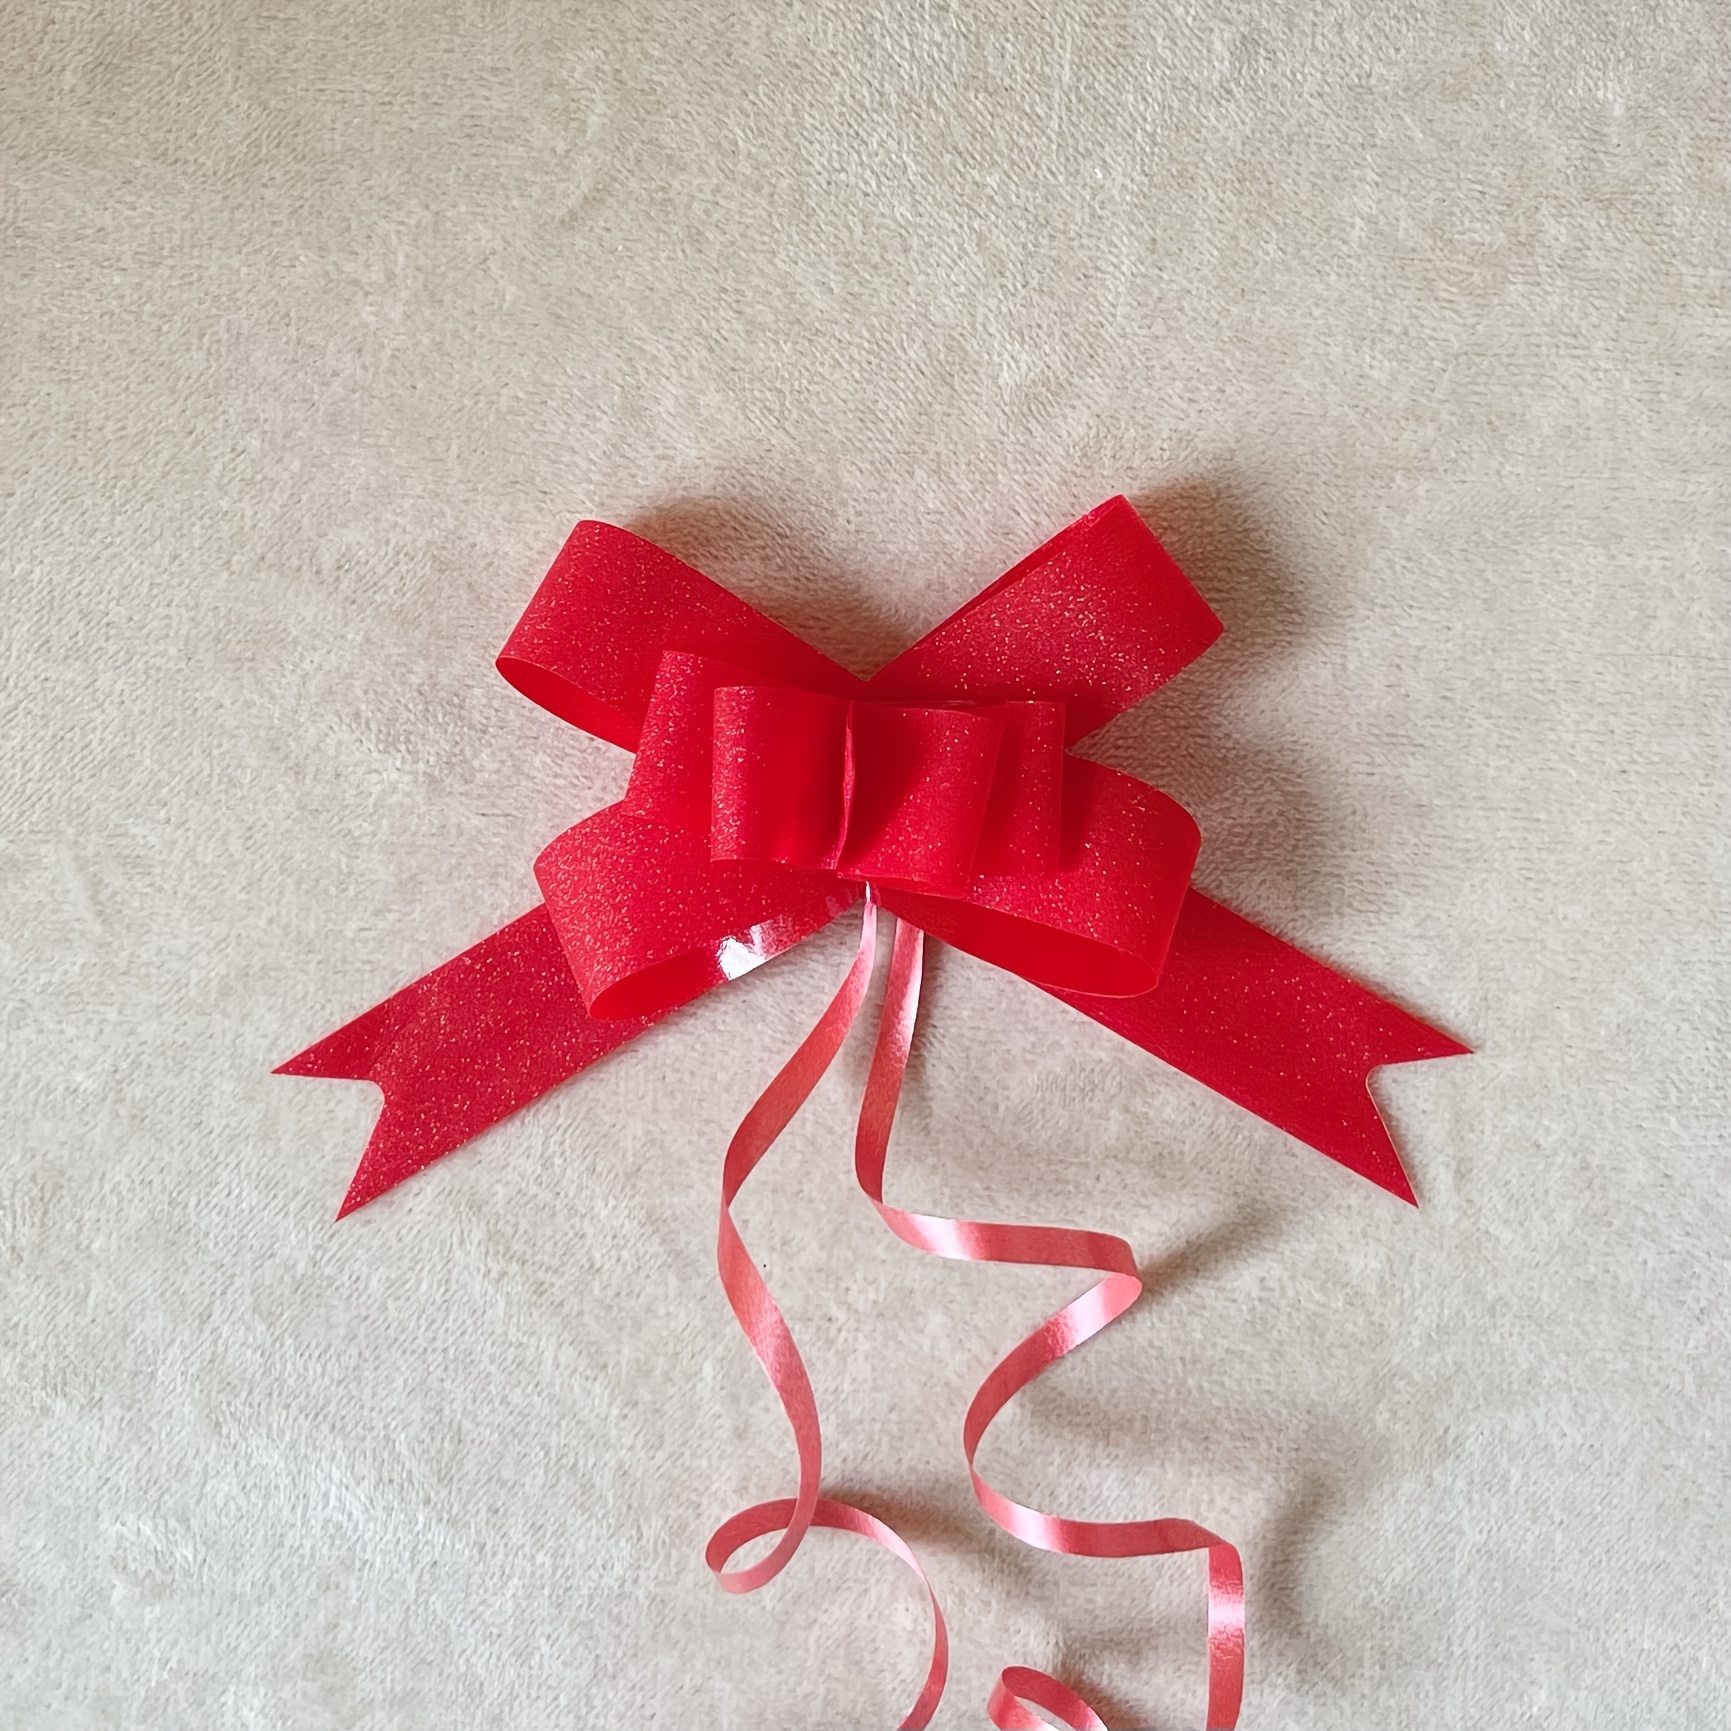 Present Ribbons and Bows, Christmas Gift Hamper Bows and Ribbons